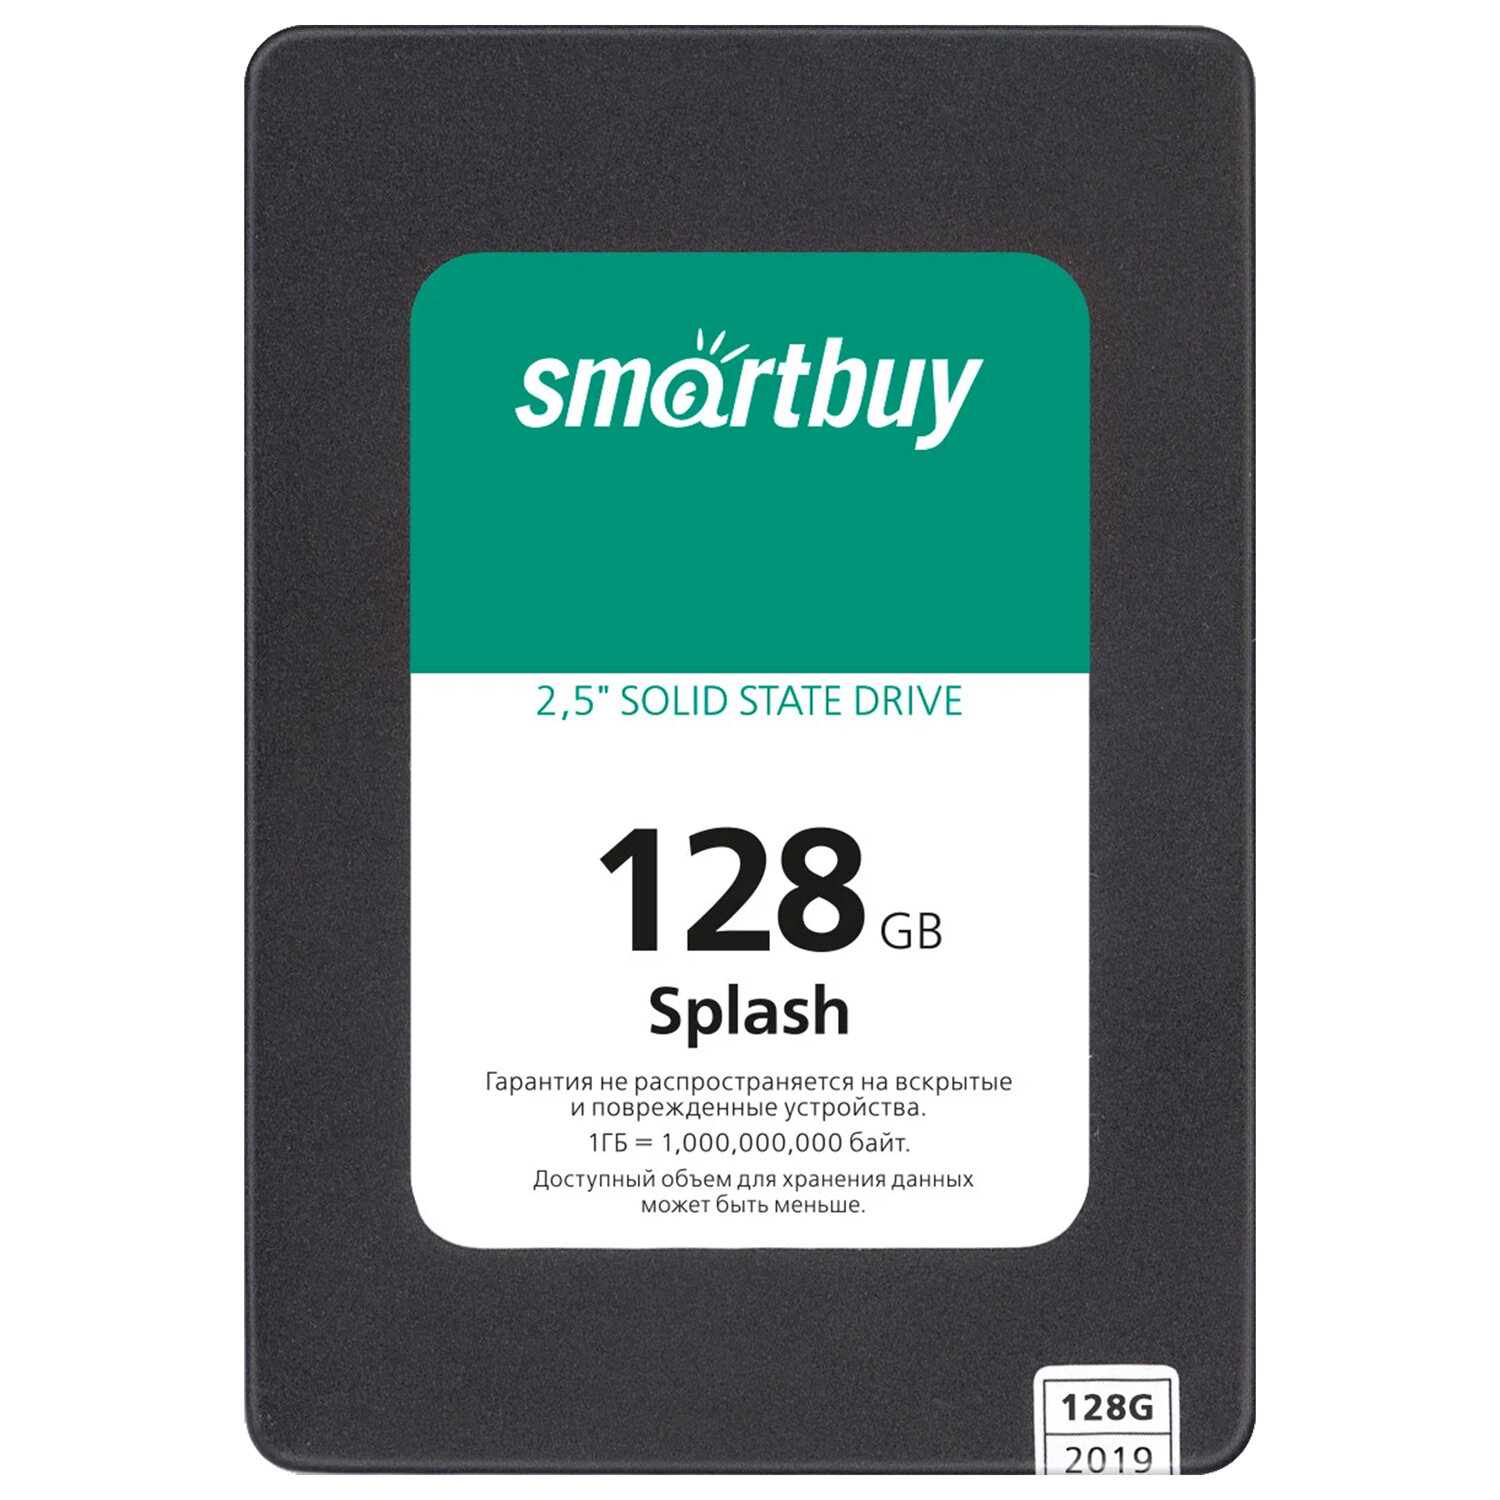  SMARTBUY SSD-128GT-MX902